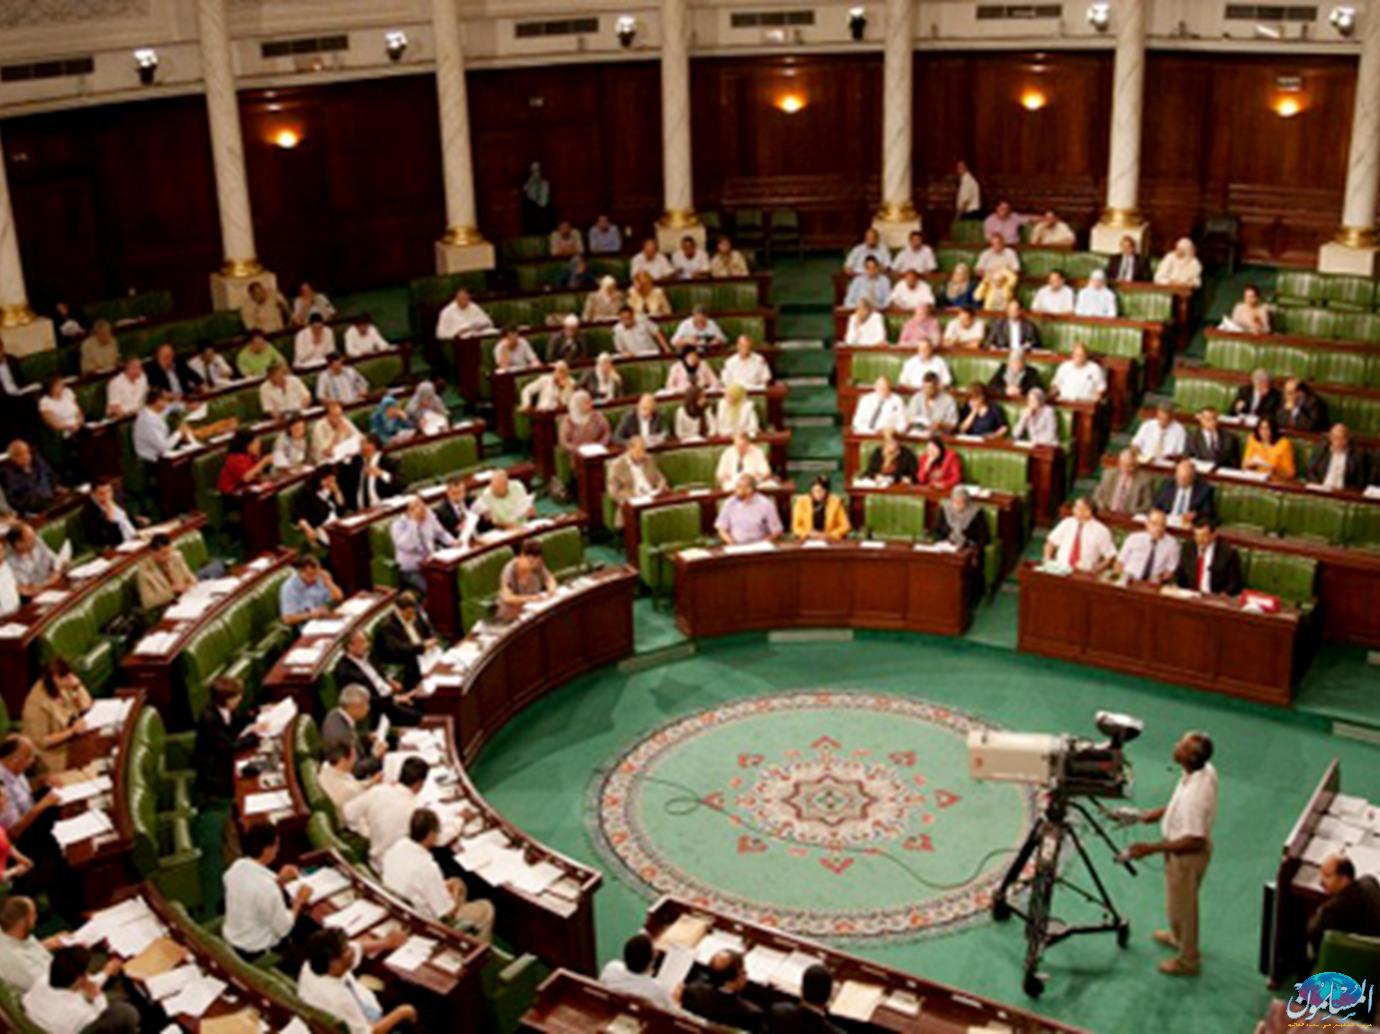   البرلمان الليبى بموقف مصر وقرار البرلمان.. ويطالب الجزائر بموقف داعم لإرادة الشعب الليبي